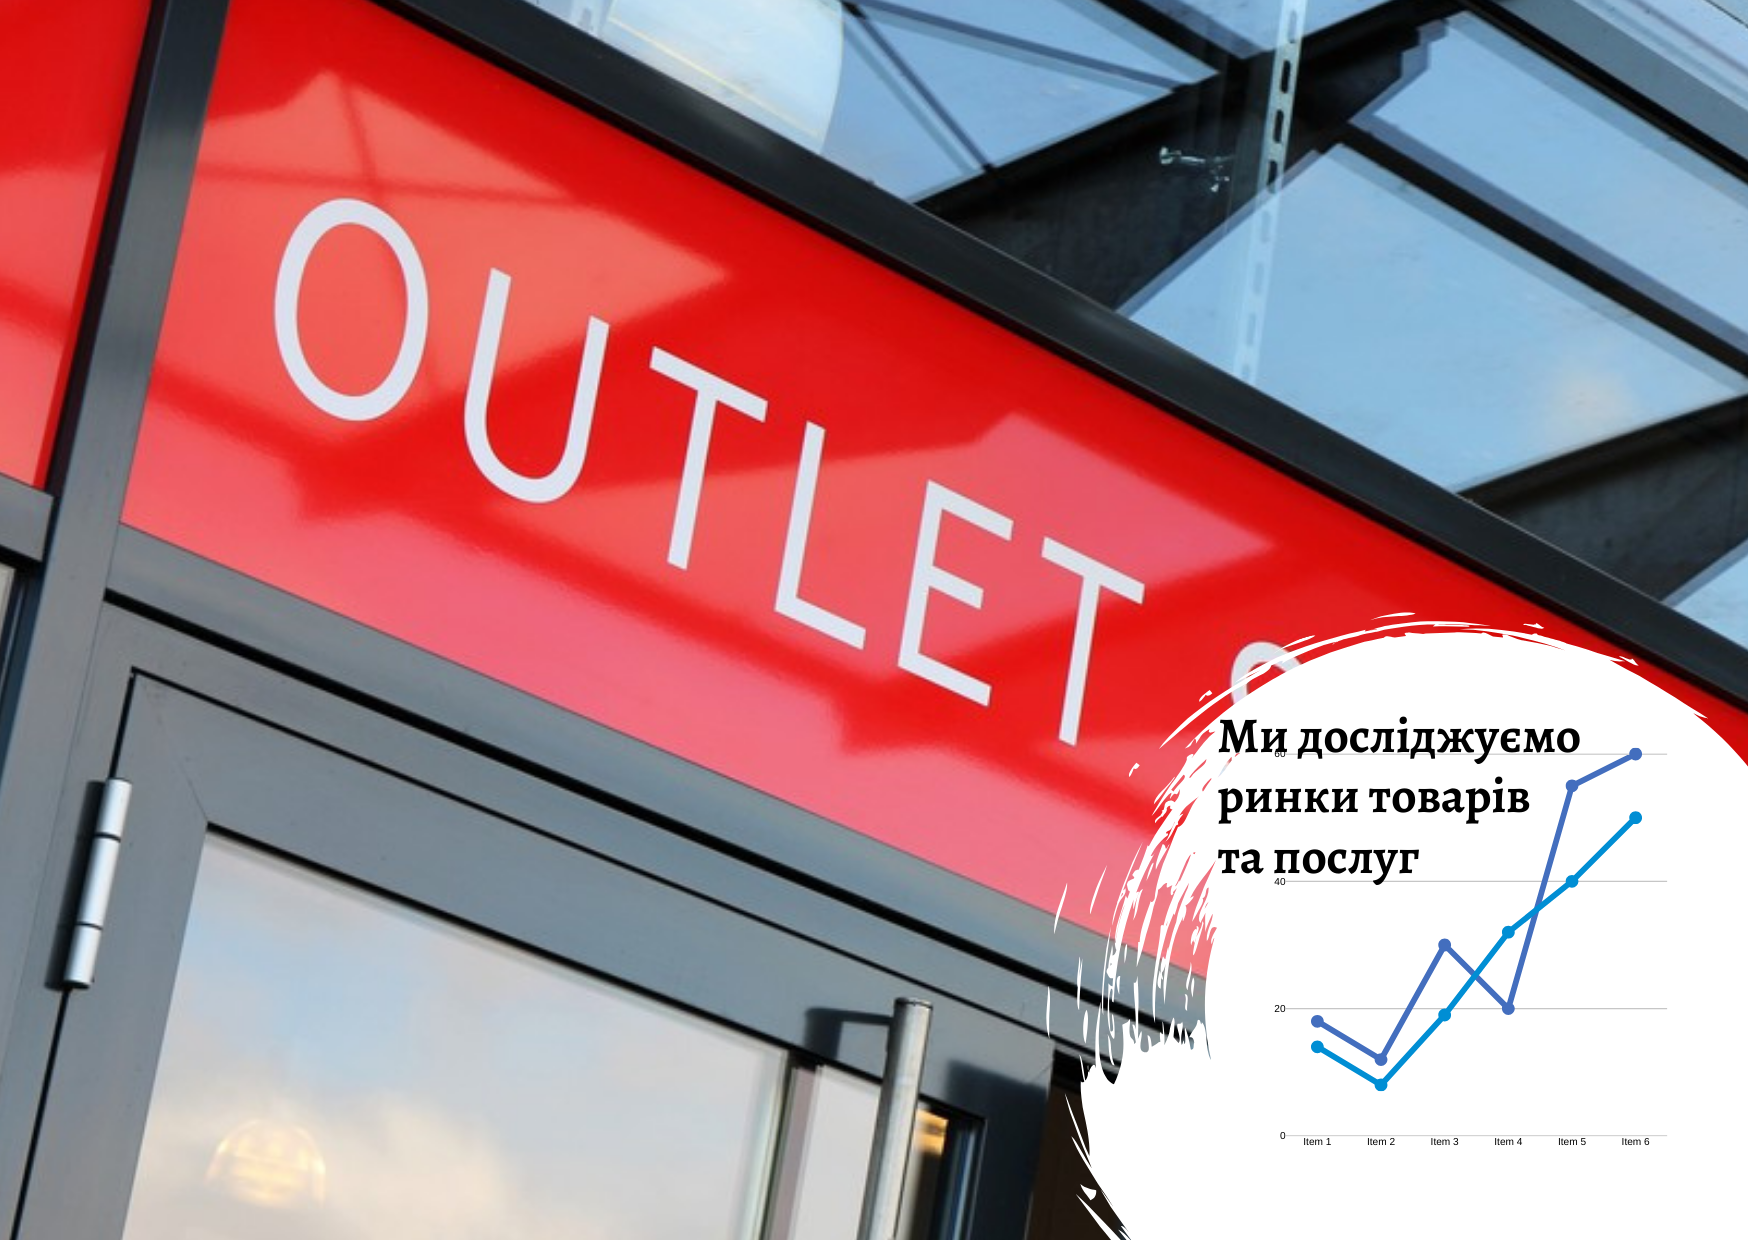 Ринок аутлет-магазинів в Україні, Казахстані та Польщі: короткий огляд